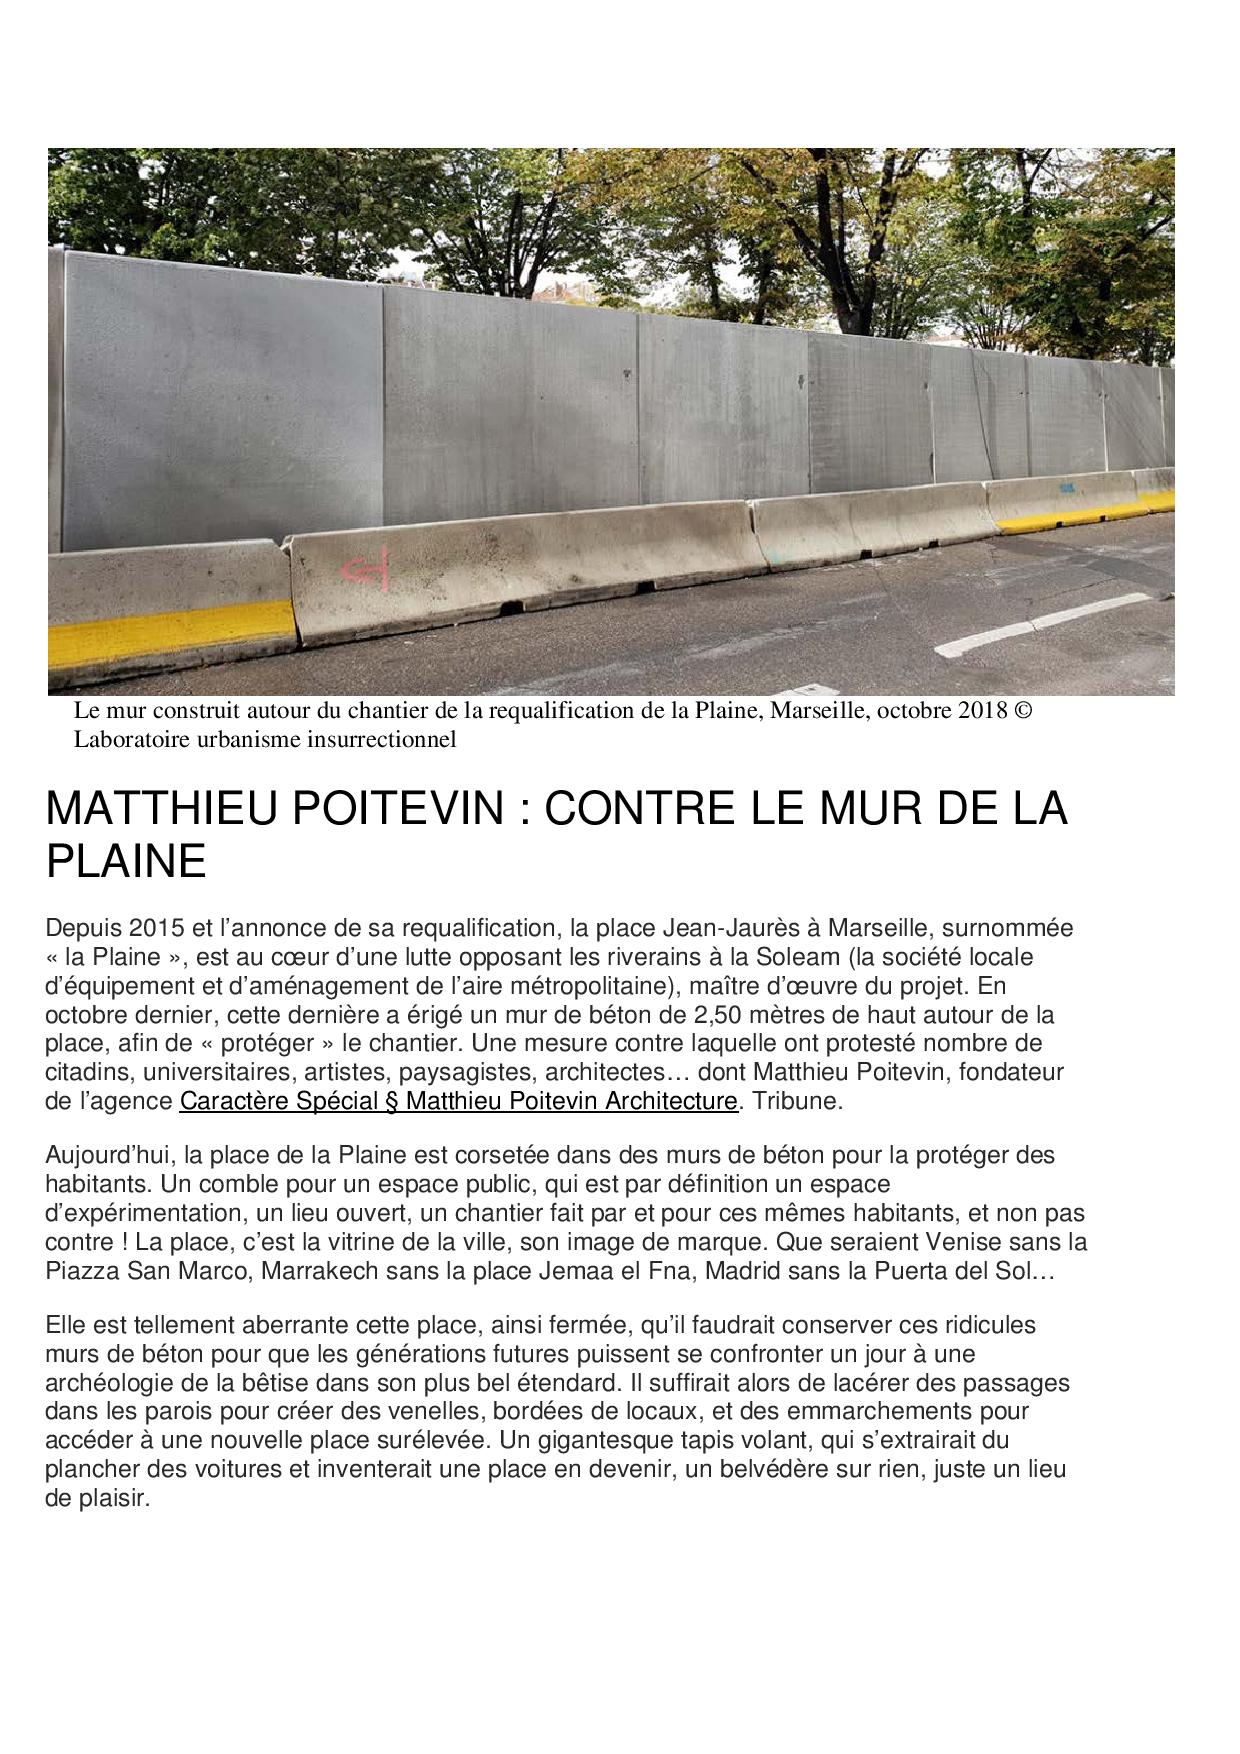 Le mur construit autour du chantier de la requalification de la Plaine - Laboratoire Urbanisme Institutionnel - octobre 2018